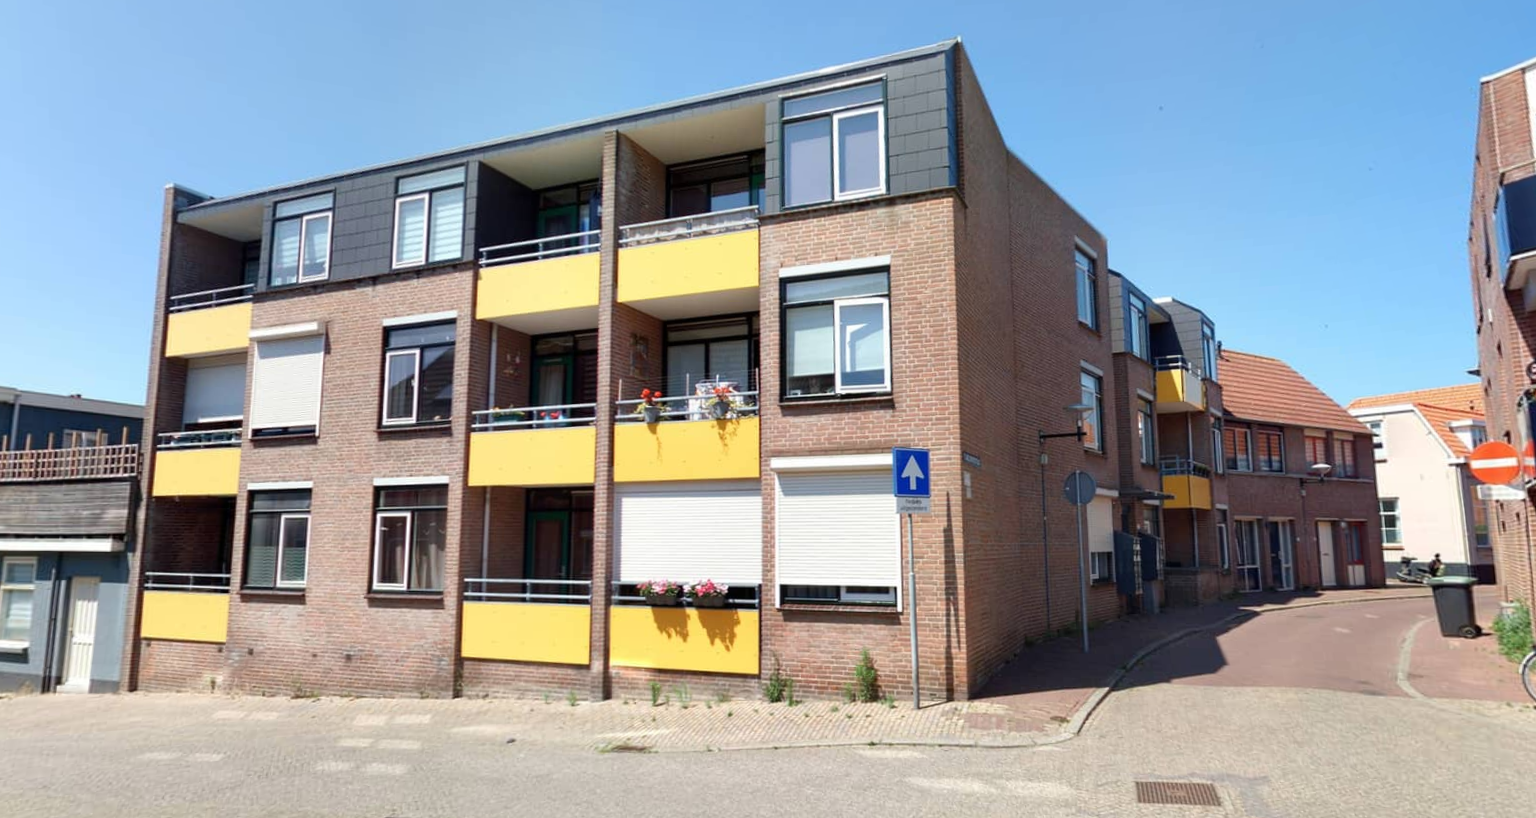 Fluwelenbroekstraat 7, 4611 JS Bergen op Zoom, Nederland